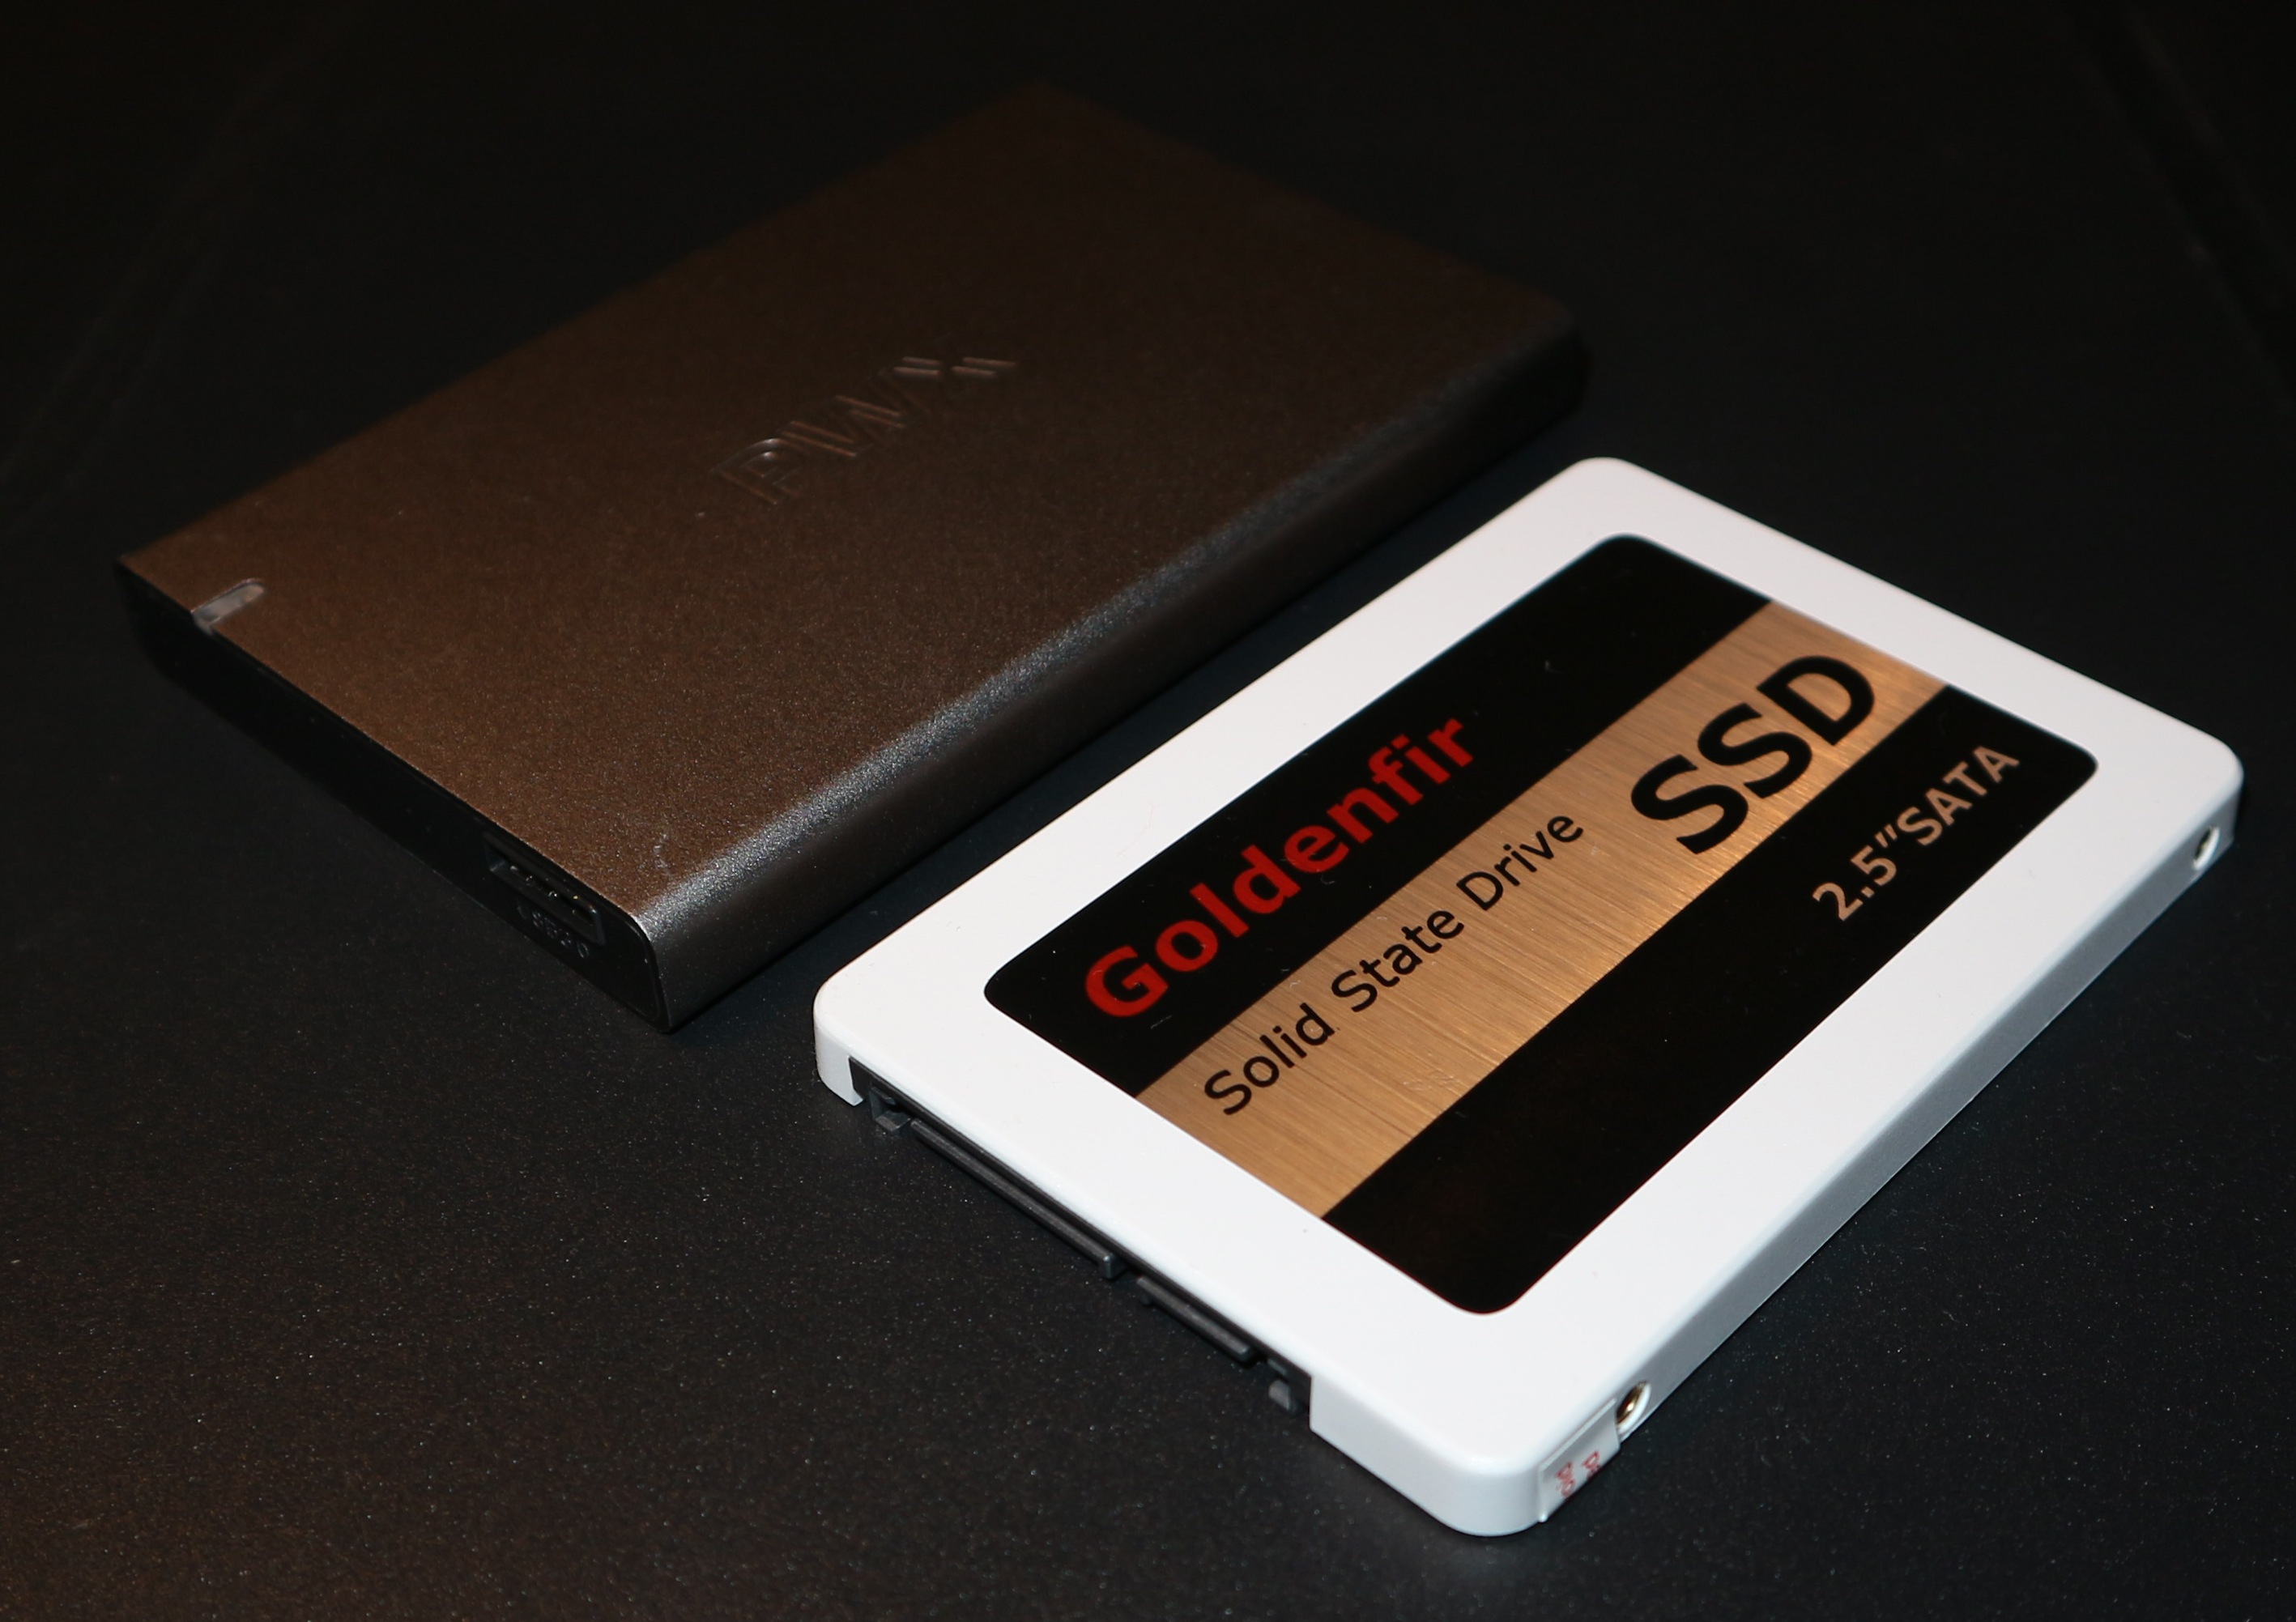 SSD SATA-III Festplatte (6GB pro Sekunde) mit 256GB - Kassa, PC und Laptop beschleunigen